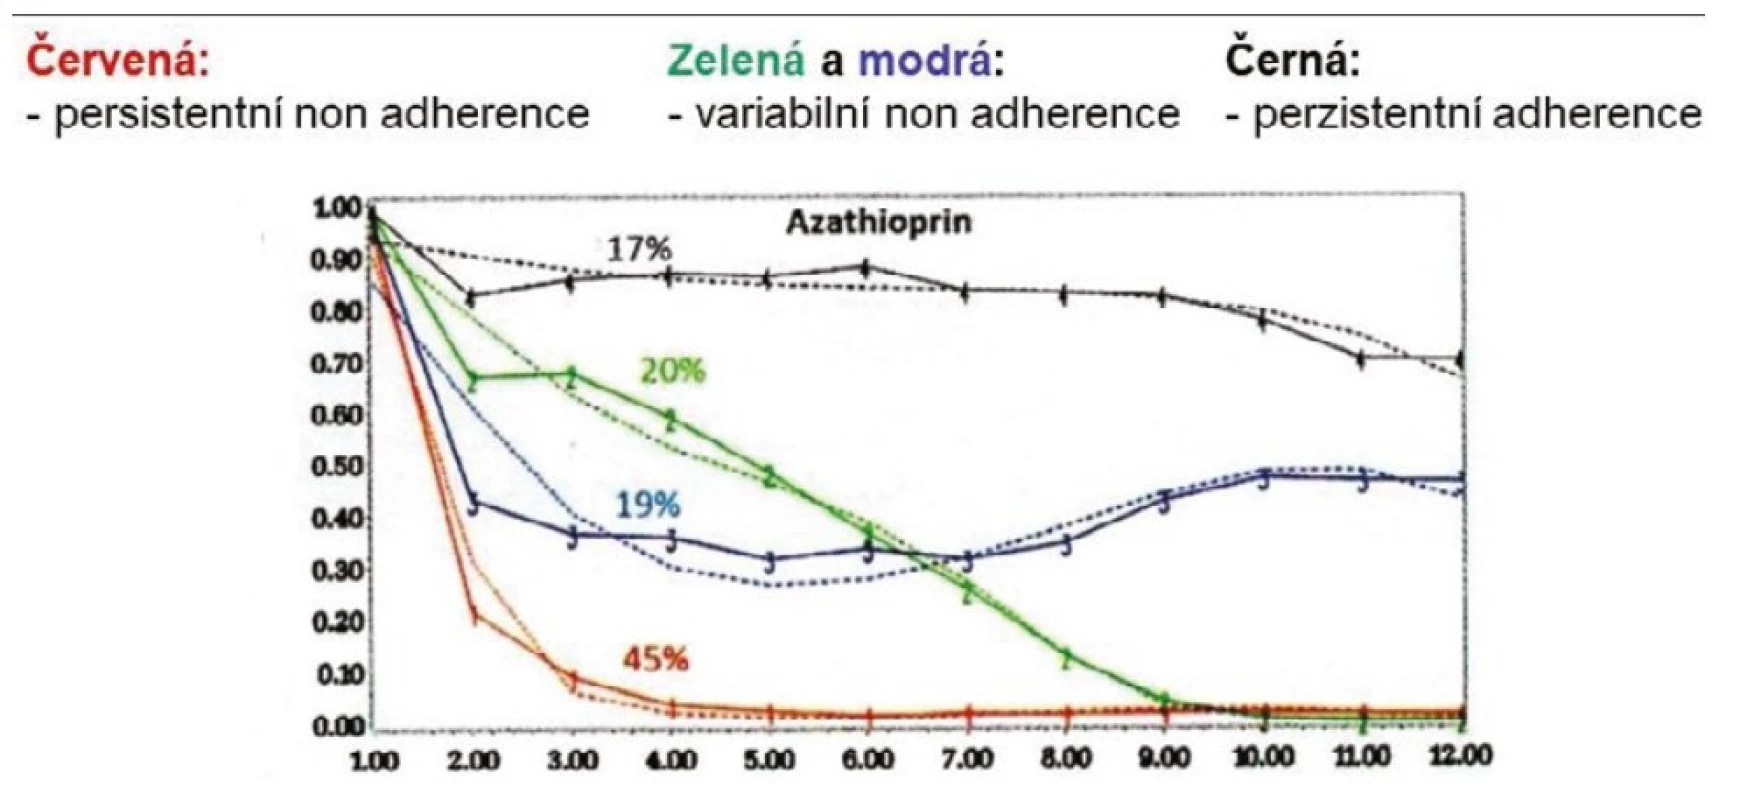 Adherence k terapii azathioprinem u systémového lupus erythematodes s ≥ 80 % každodenního sledování. US databáze Medical Analytic eXact 2000–2010, N:2309 (upraveno podle Feldman CN, et al. (19))